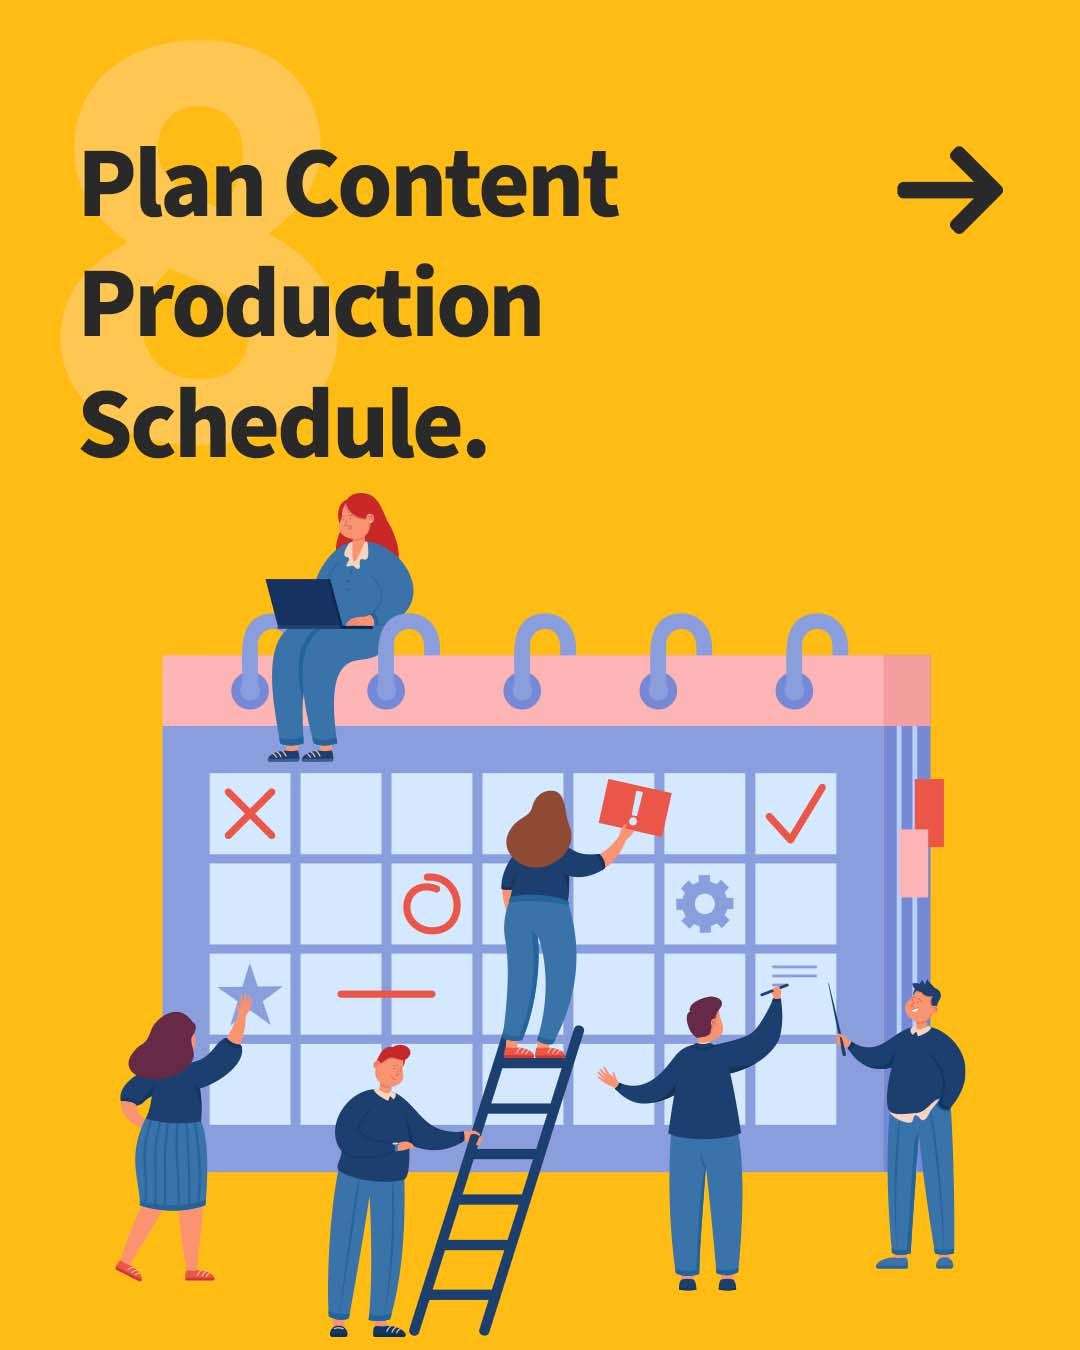 8. Plan Content Production Schedule